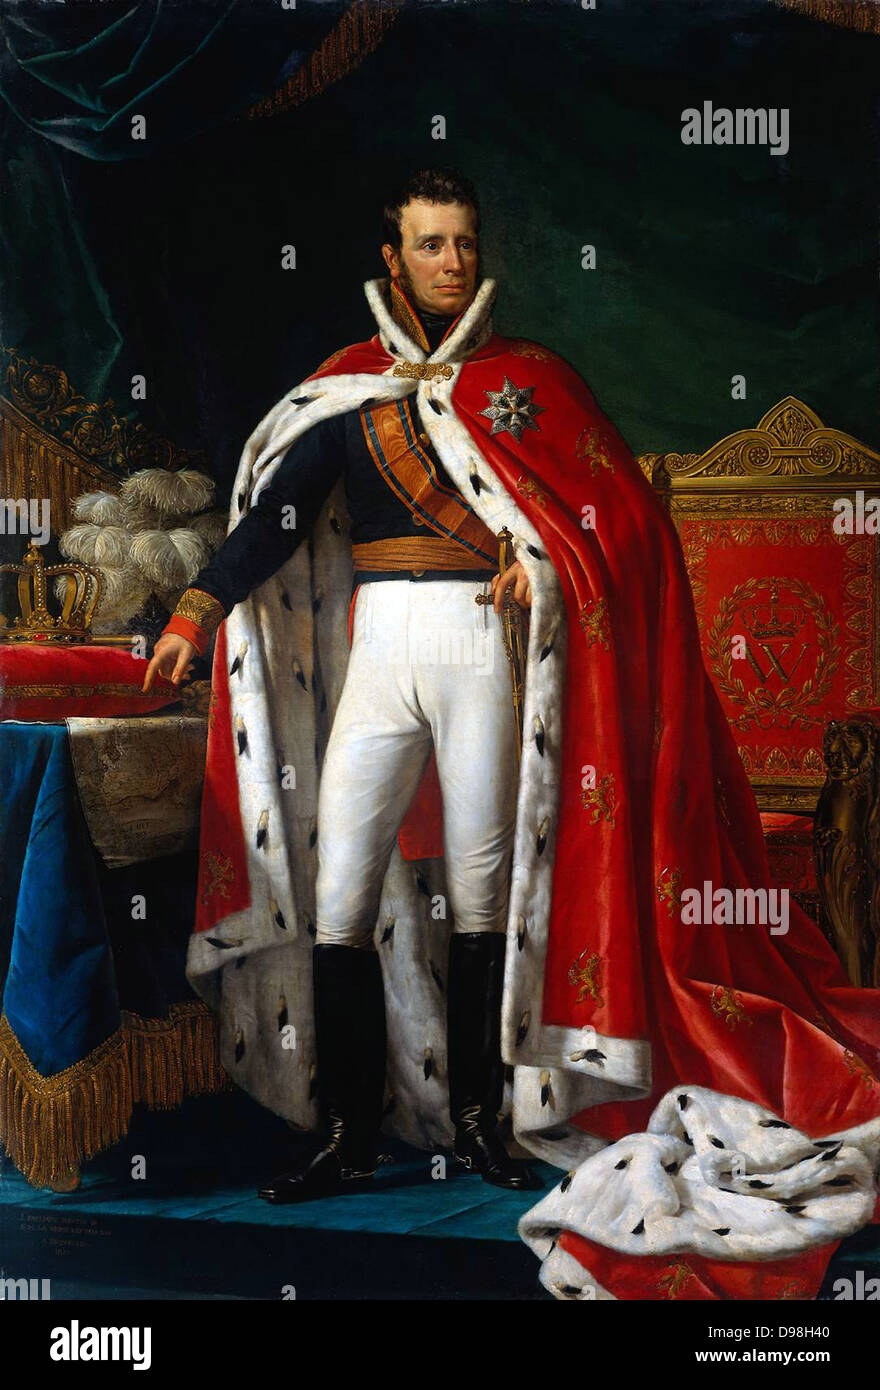 Federico Guillermo I, nacido Prins Willem Frederik van Oranje-Nassau (24 de agosto de 1772 - 12 de diciembre de 1843), era un príncipe de Orange y el primer rey de los Países Bajos y Gran Duque de Luxemburgo. Foto de stock